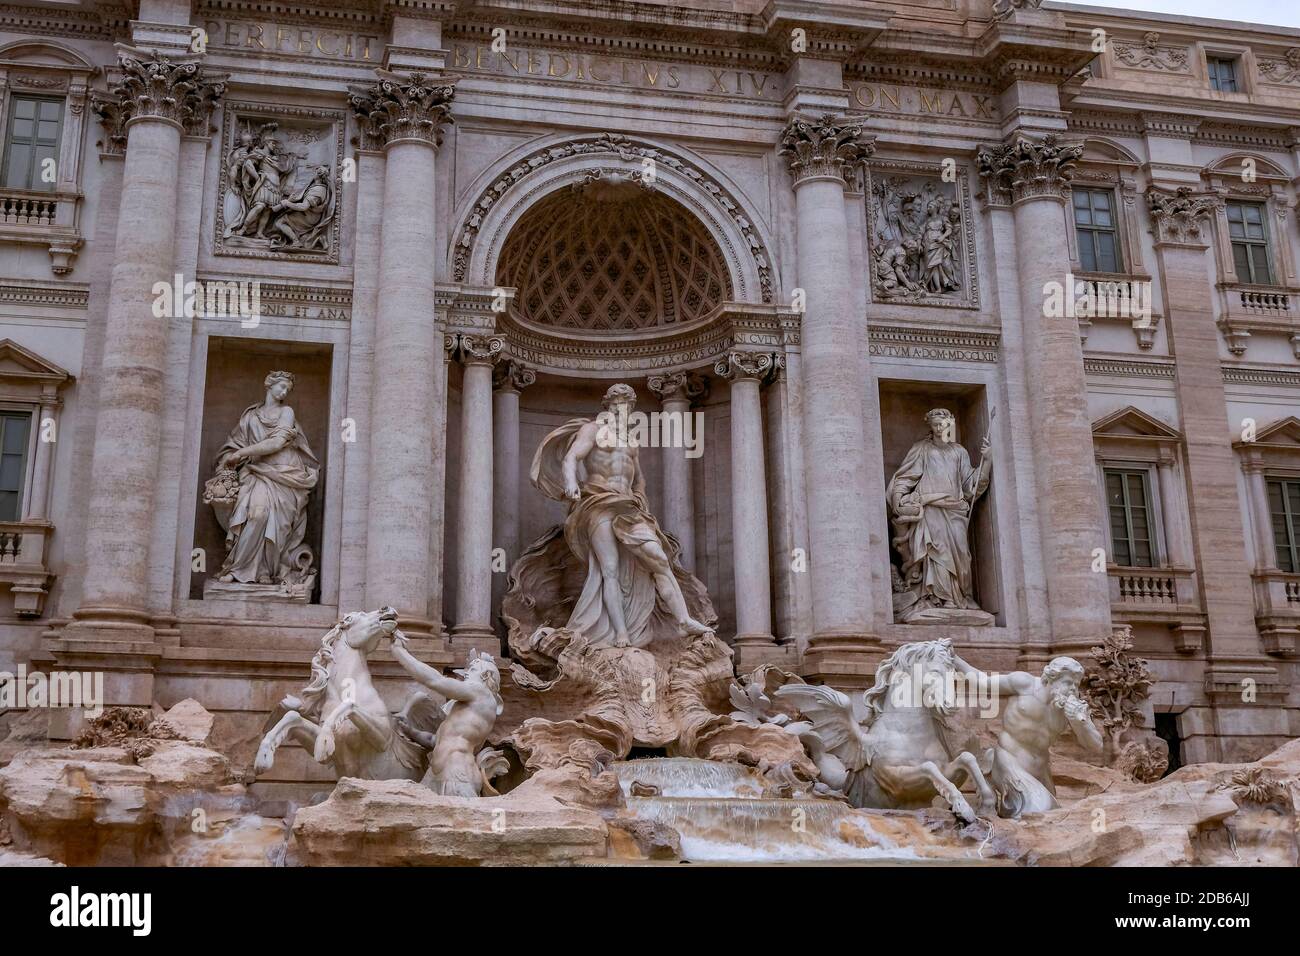 Fontana di Trevi - magnifique et emblématique Fontaine d'eau - vide, jour de la pluie - Rome, Italie Banque D'Images